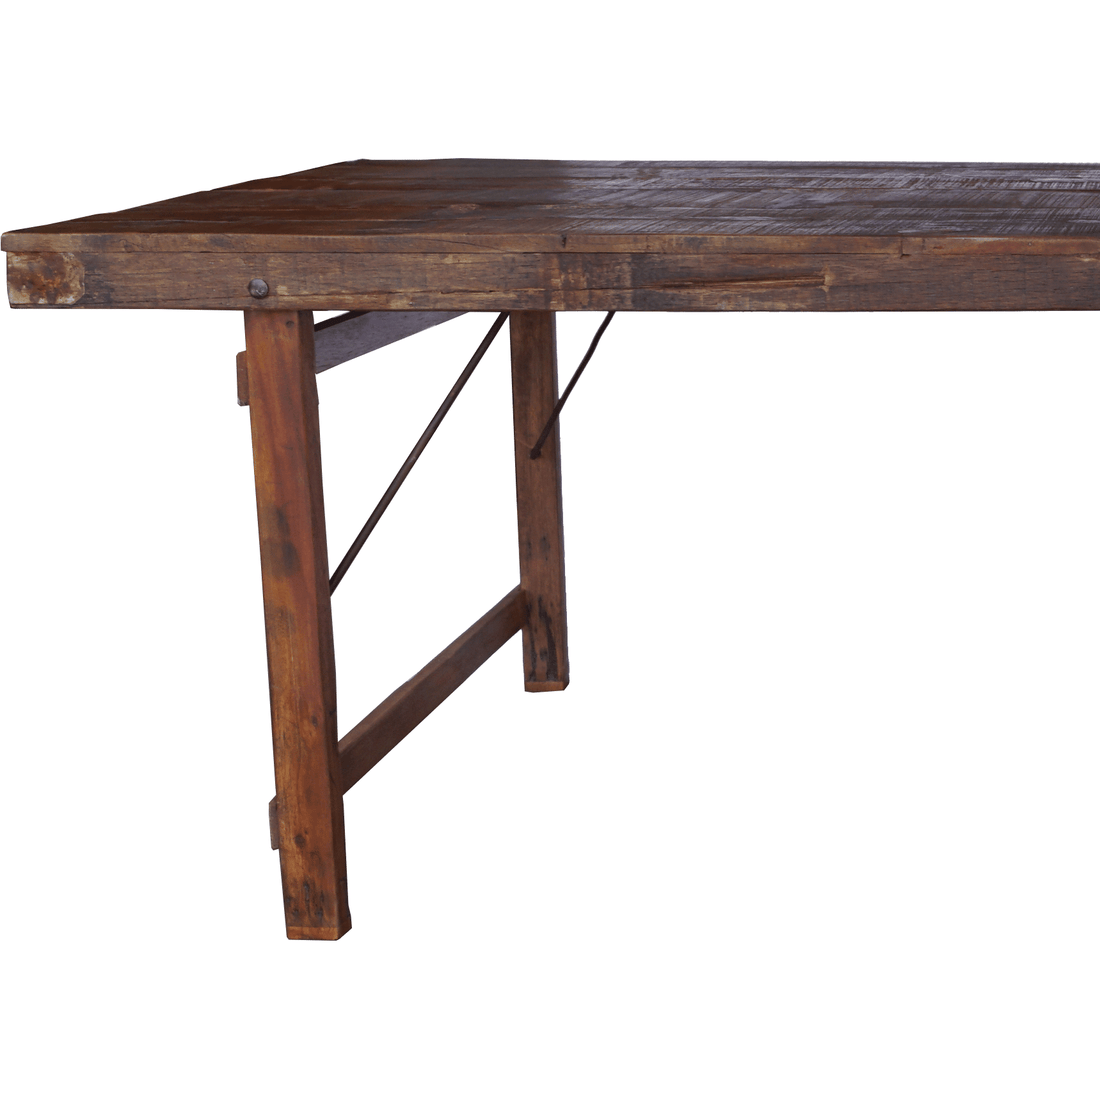 Trademark Living Kuta matbord i trä med vacker patina